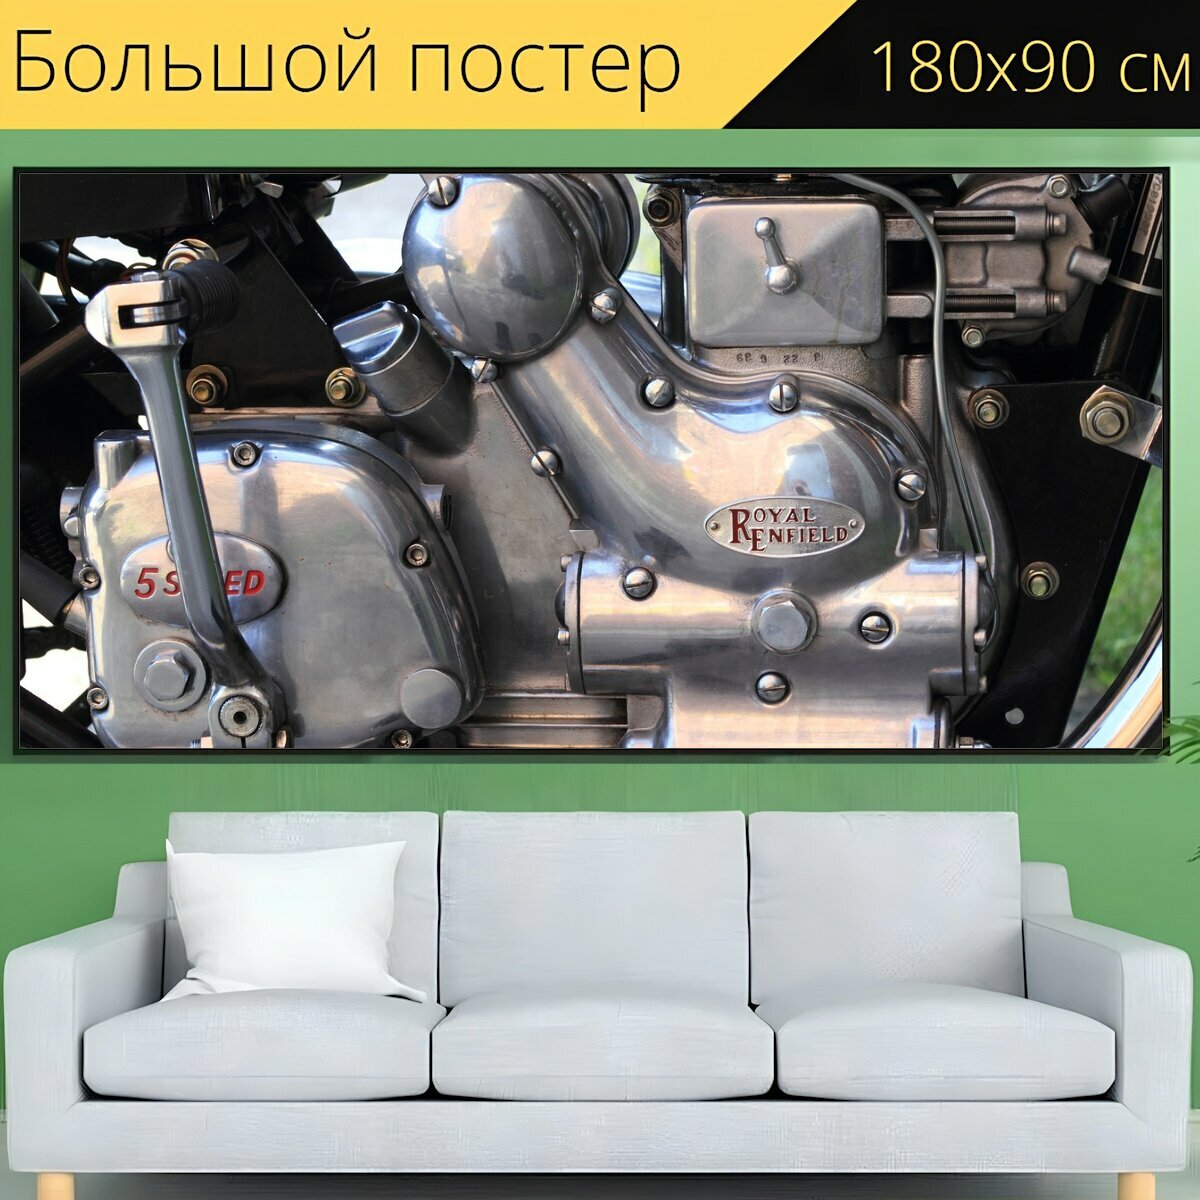 Большой постер "Мотор мотоцикл двигатель" 180 x 90 см. для интерьера